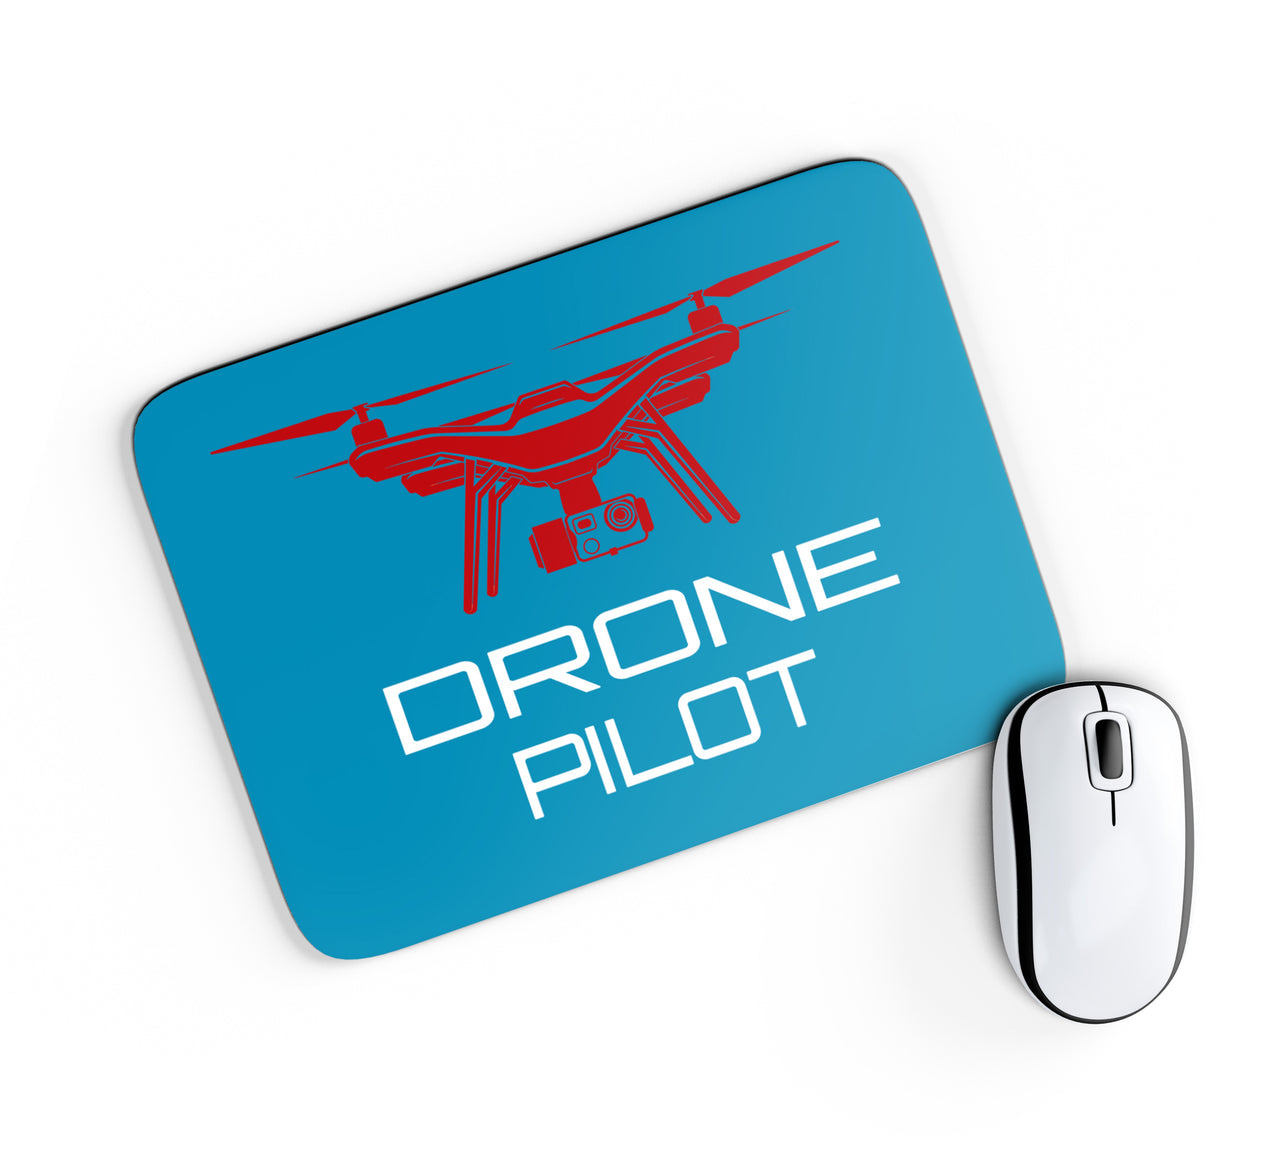 Drone Pilot Designed Mouse Pads